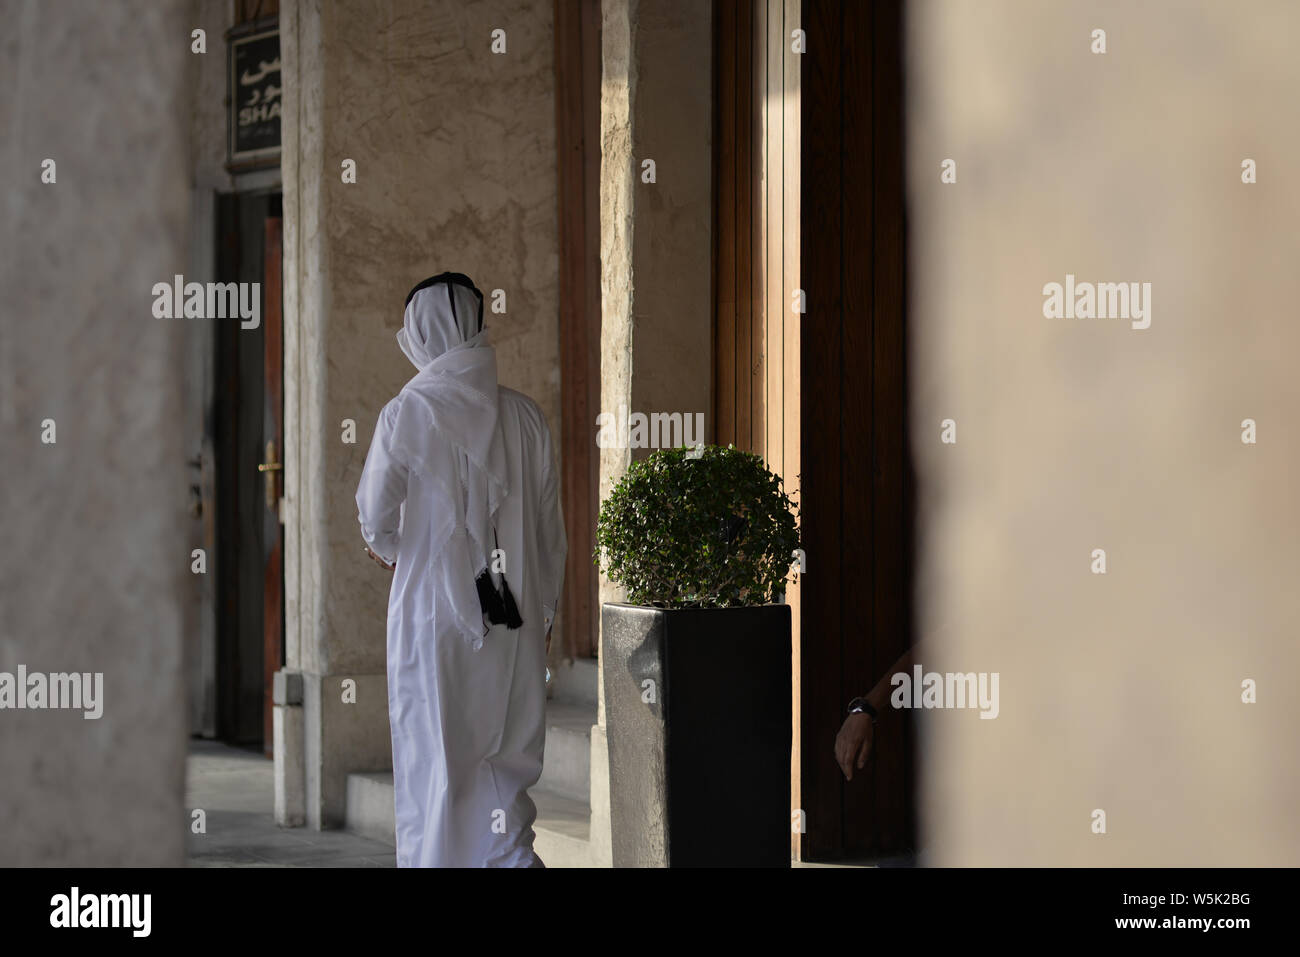 DOHA, QATAR - Mai 21, 2016 : l'homme du Qatar vu de dos dans le souk Wakif marche dans un passage couvert. Photo prise à la fin d'un après-midi de printemps Banque D'Images